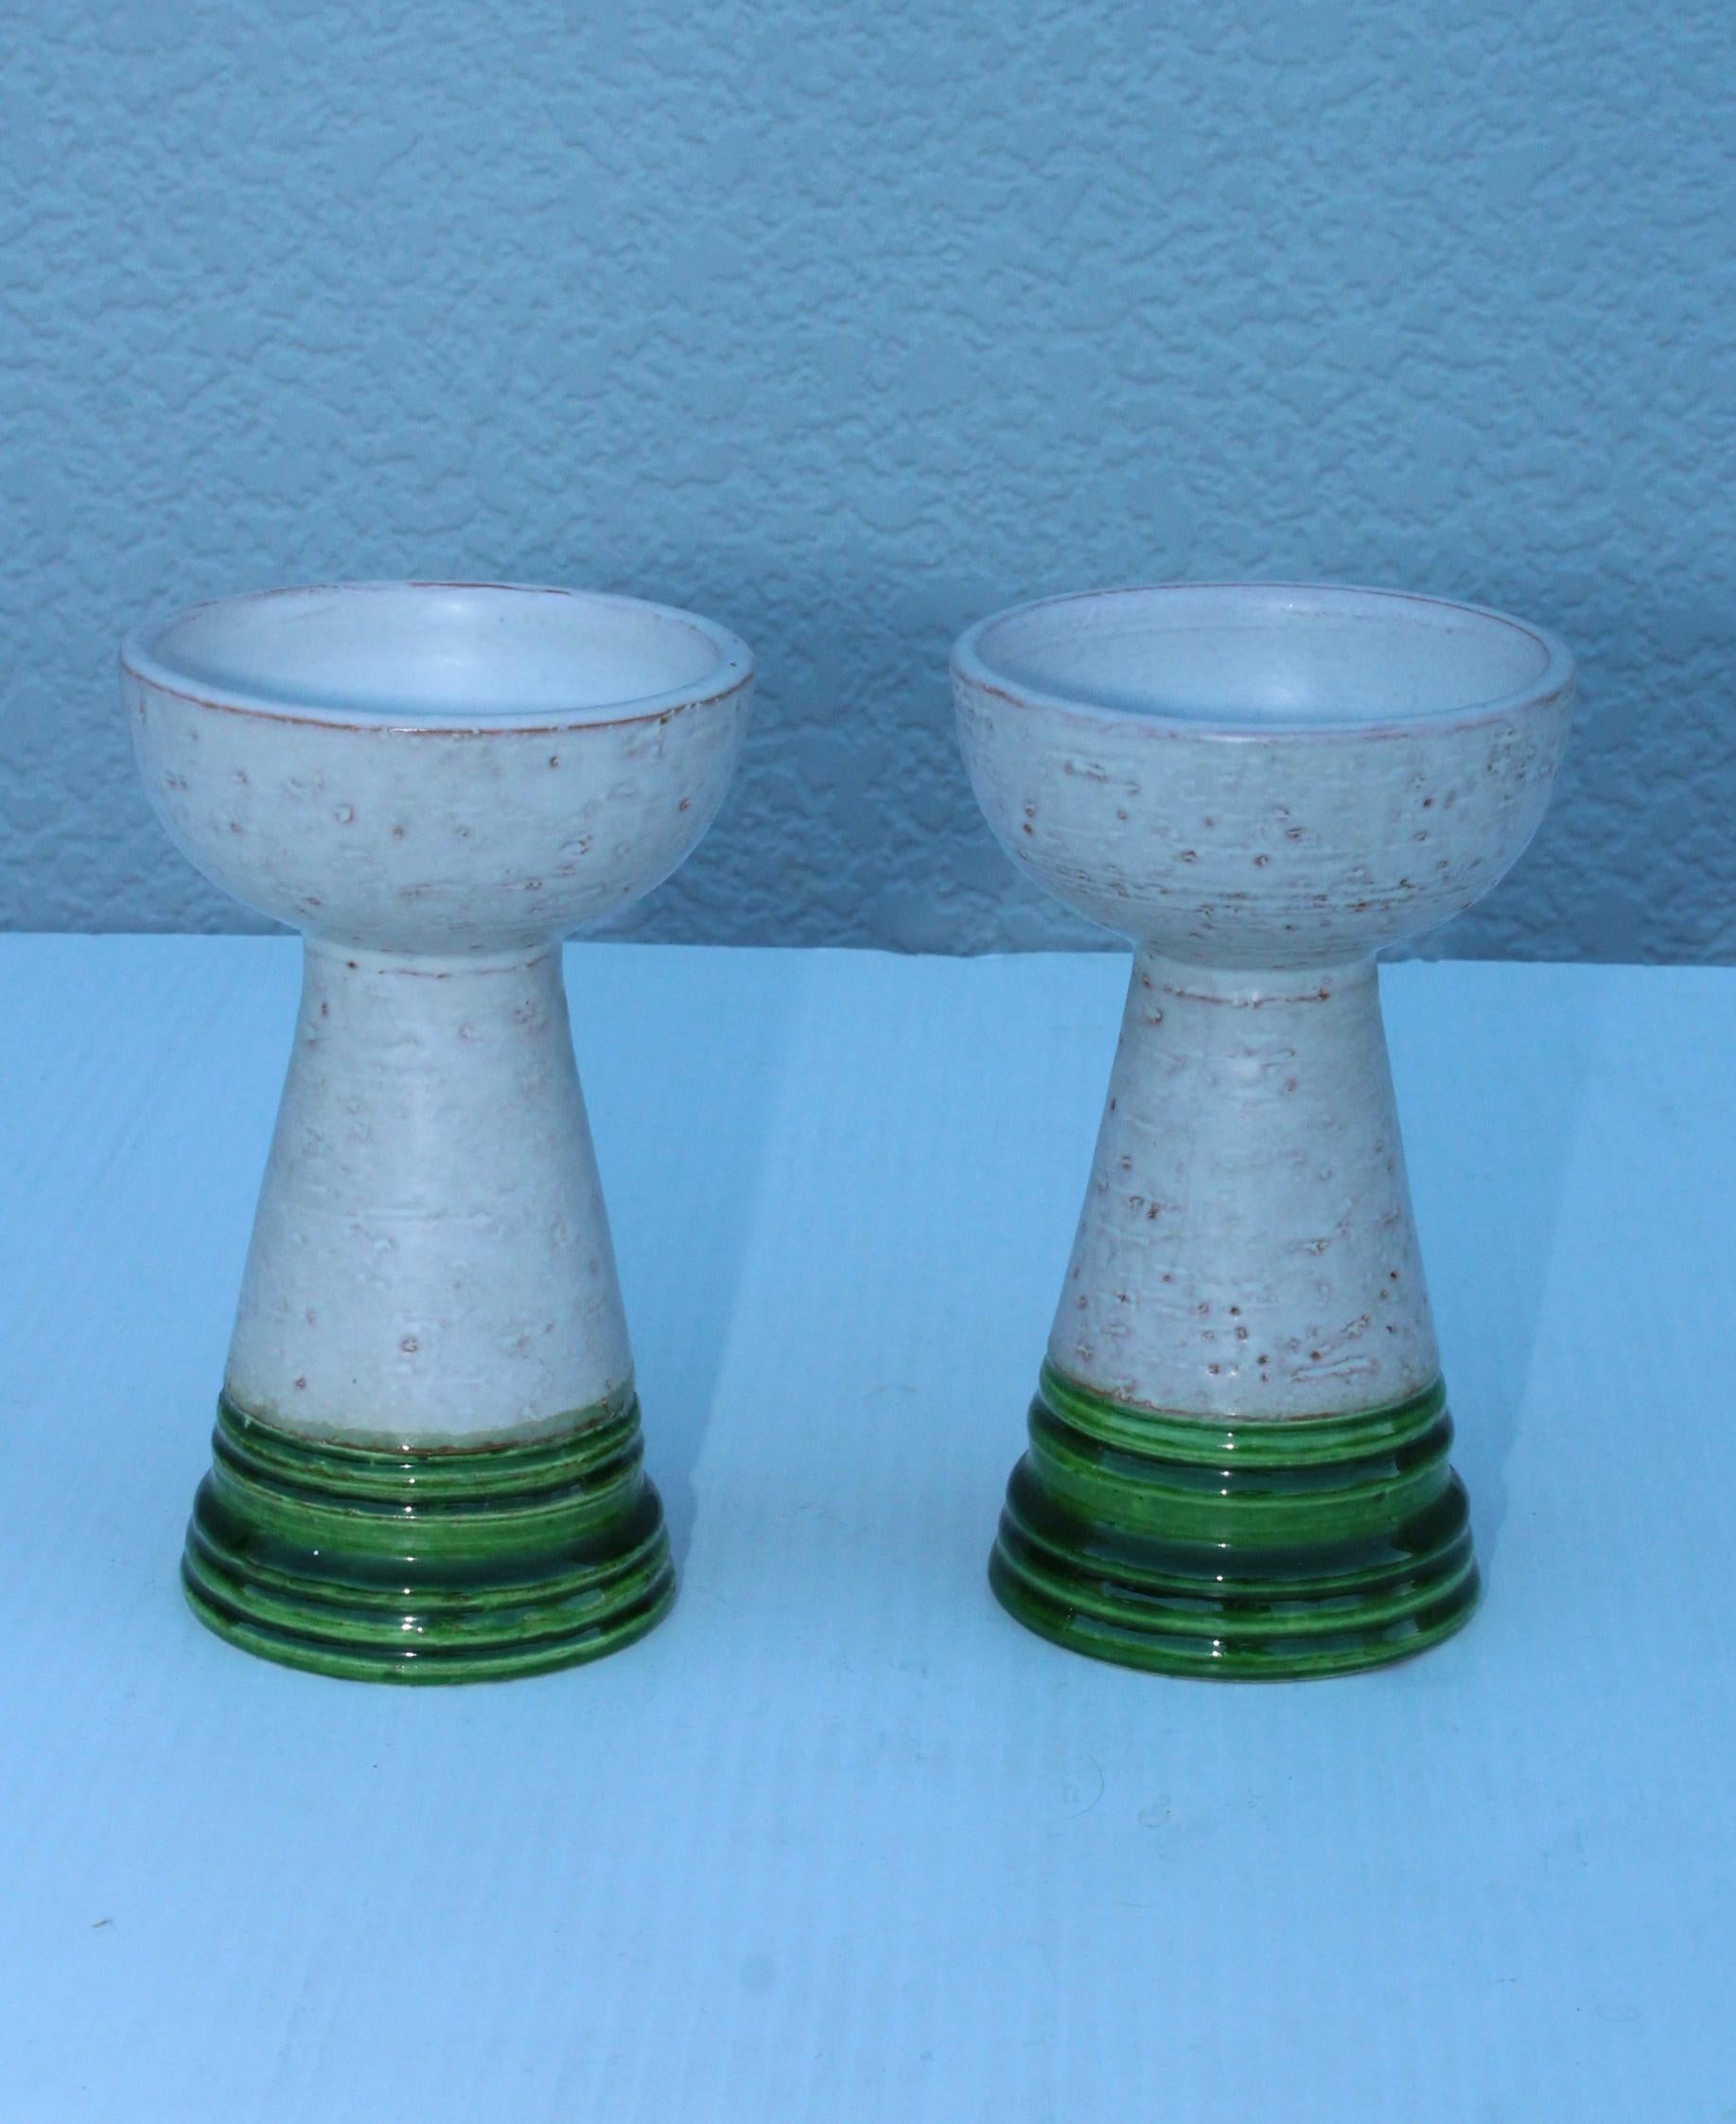 1960's mid-century modern ceramic candlesticks by Rosenthal Netter.